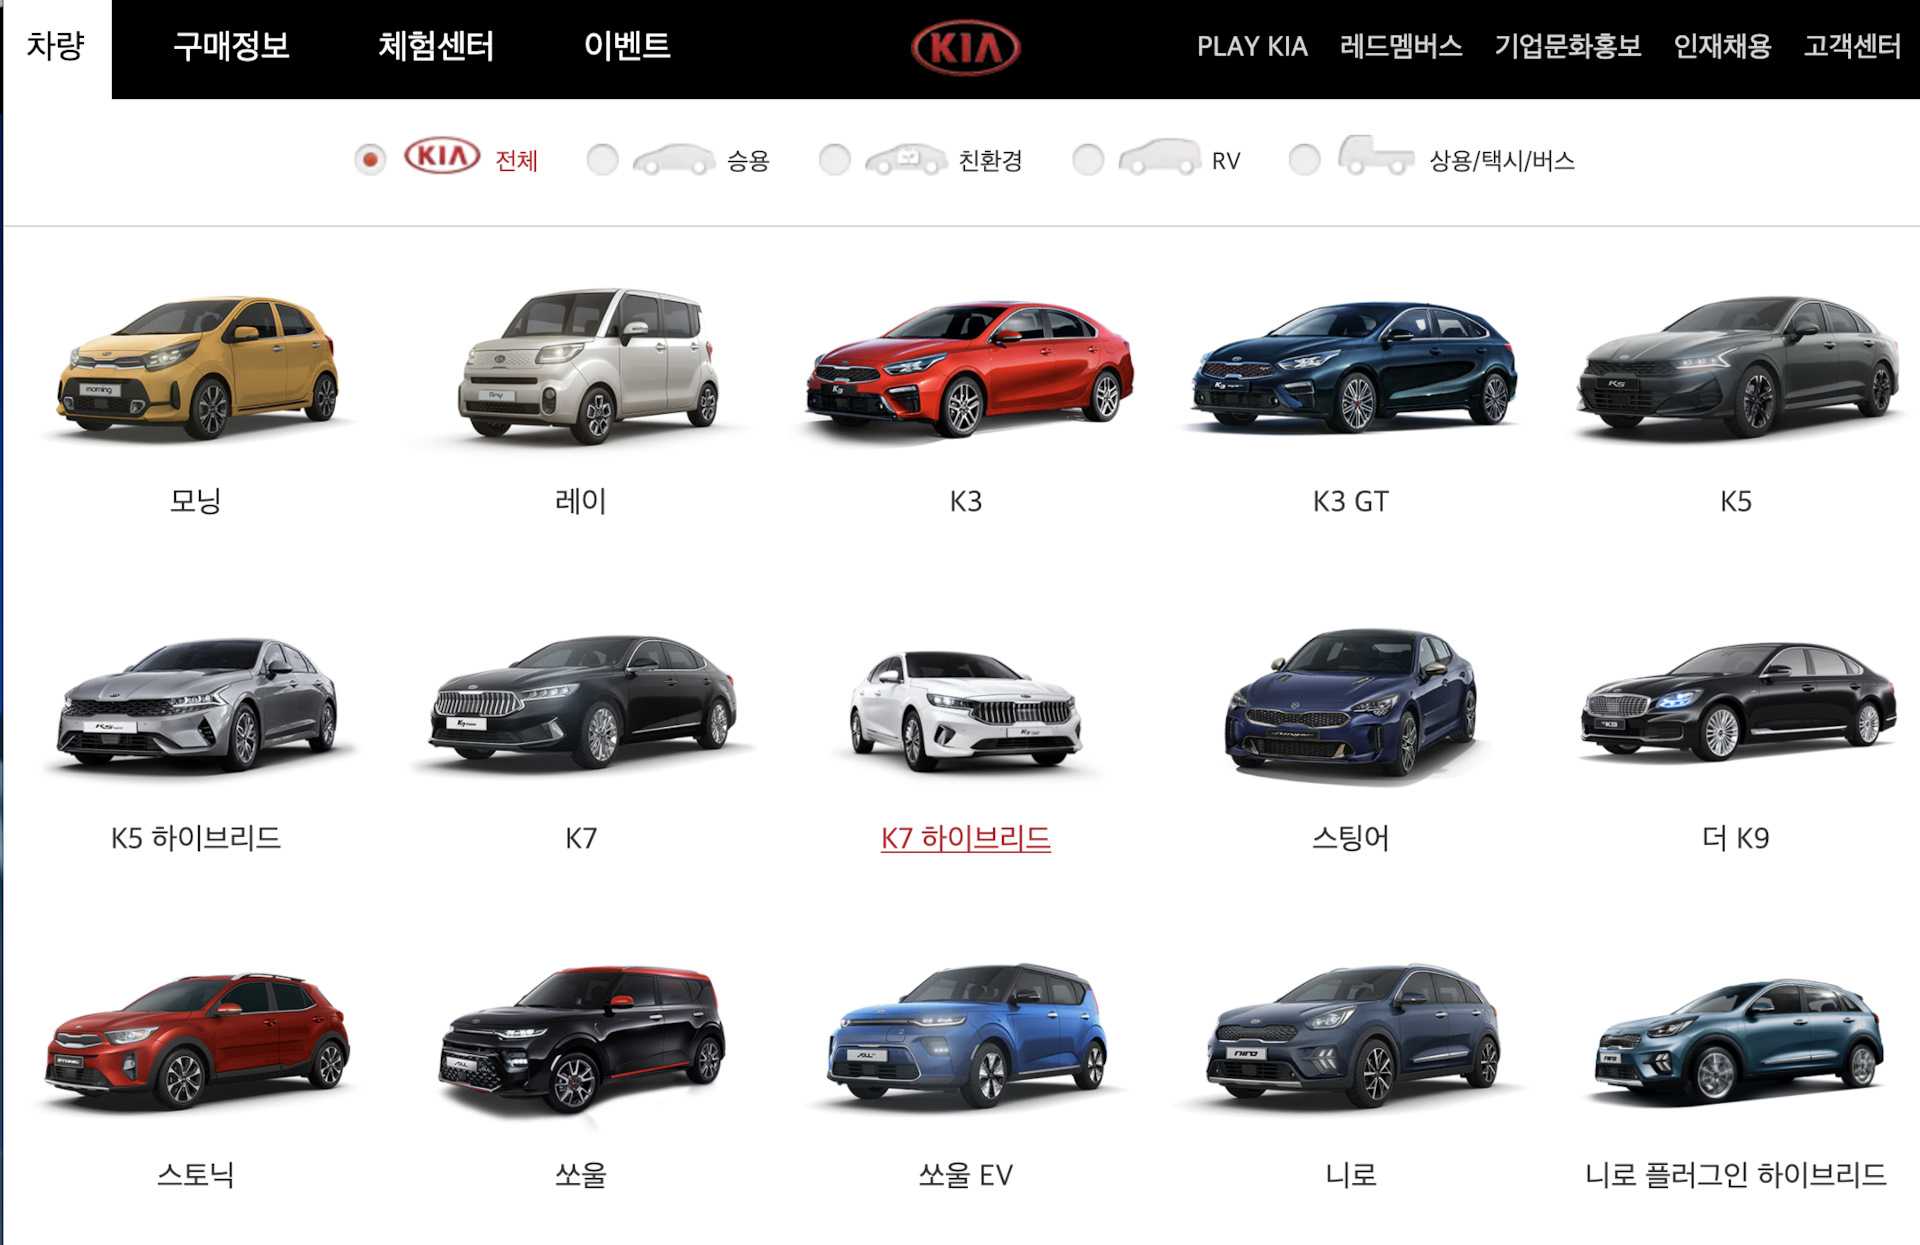 Kia carens - технические характеристики, отзывы владельцев автомобиля и история модели киа каренс